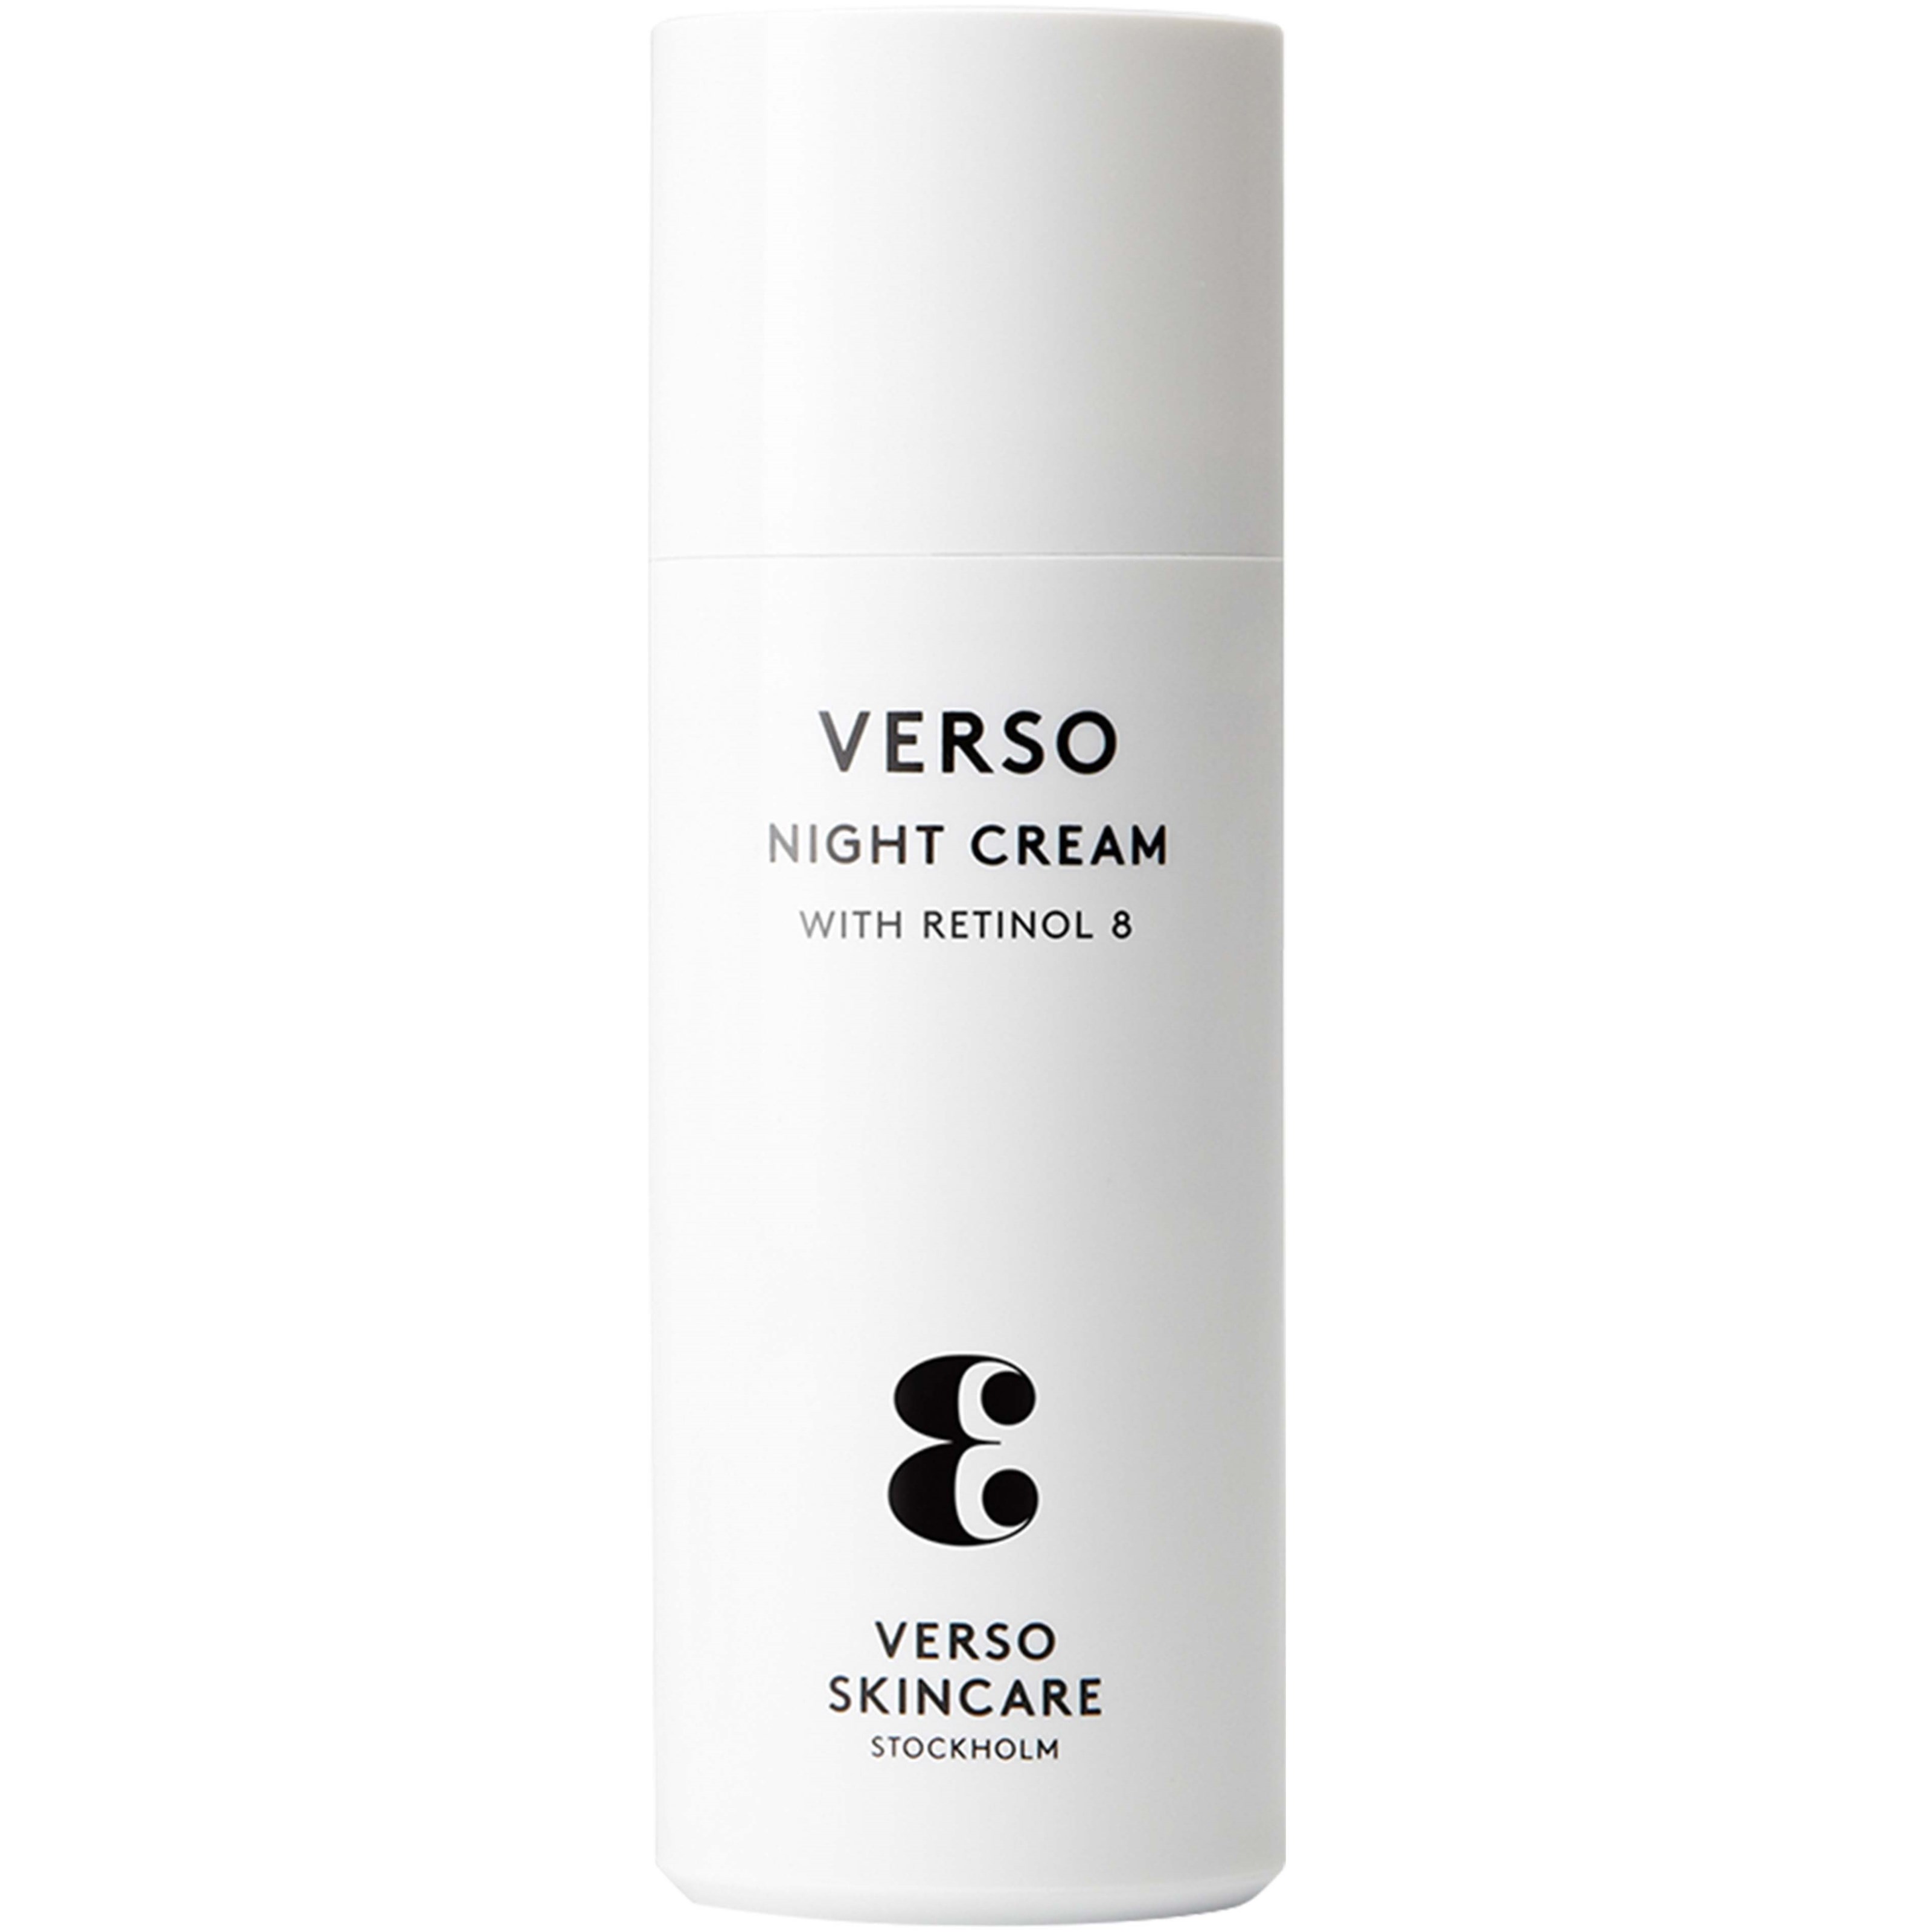 Bilde av Verso Skincare N°3 Night Cream With Retinol 8 50 Ml